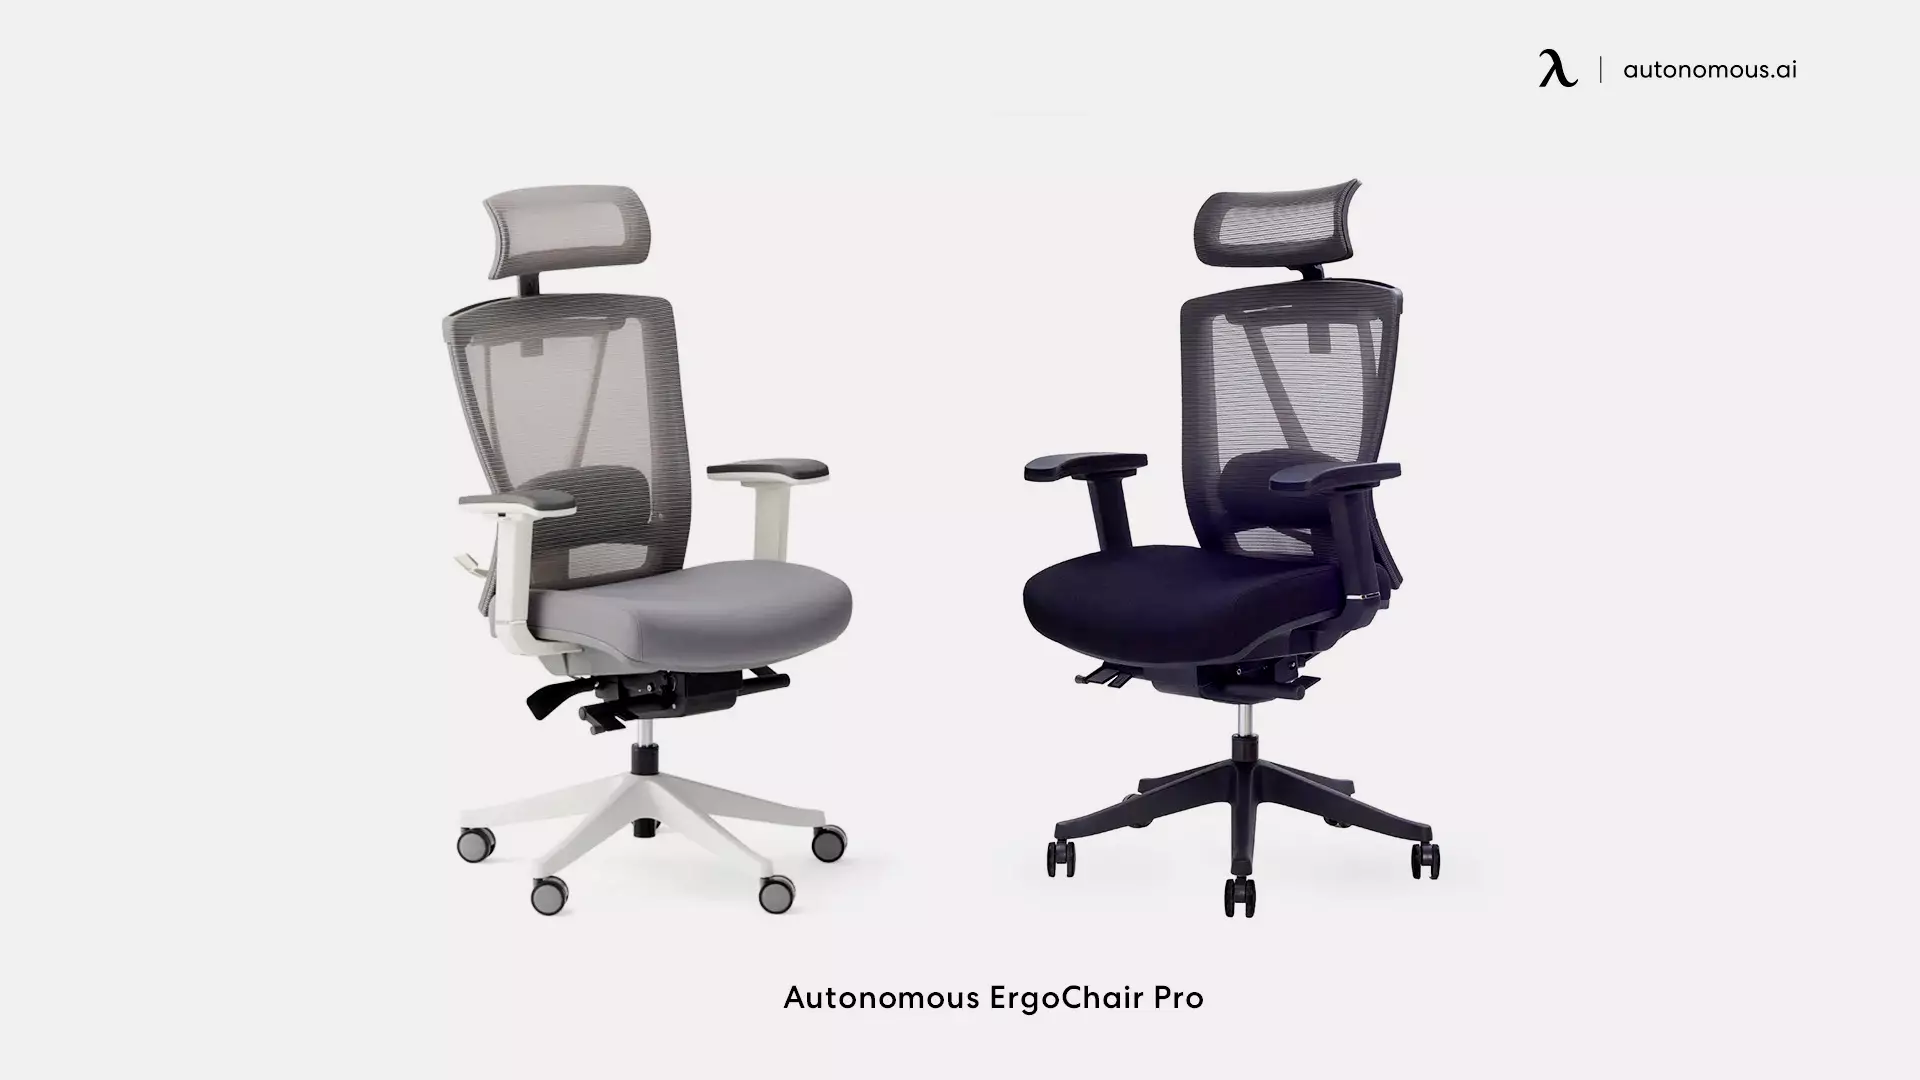 ErgoChair Pro stationary office chair